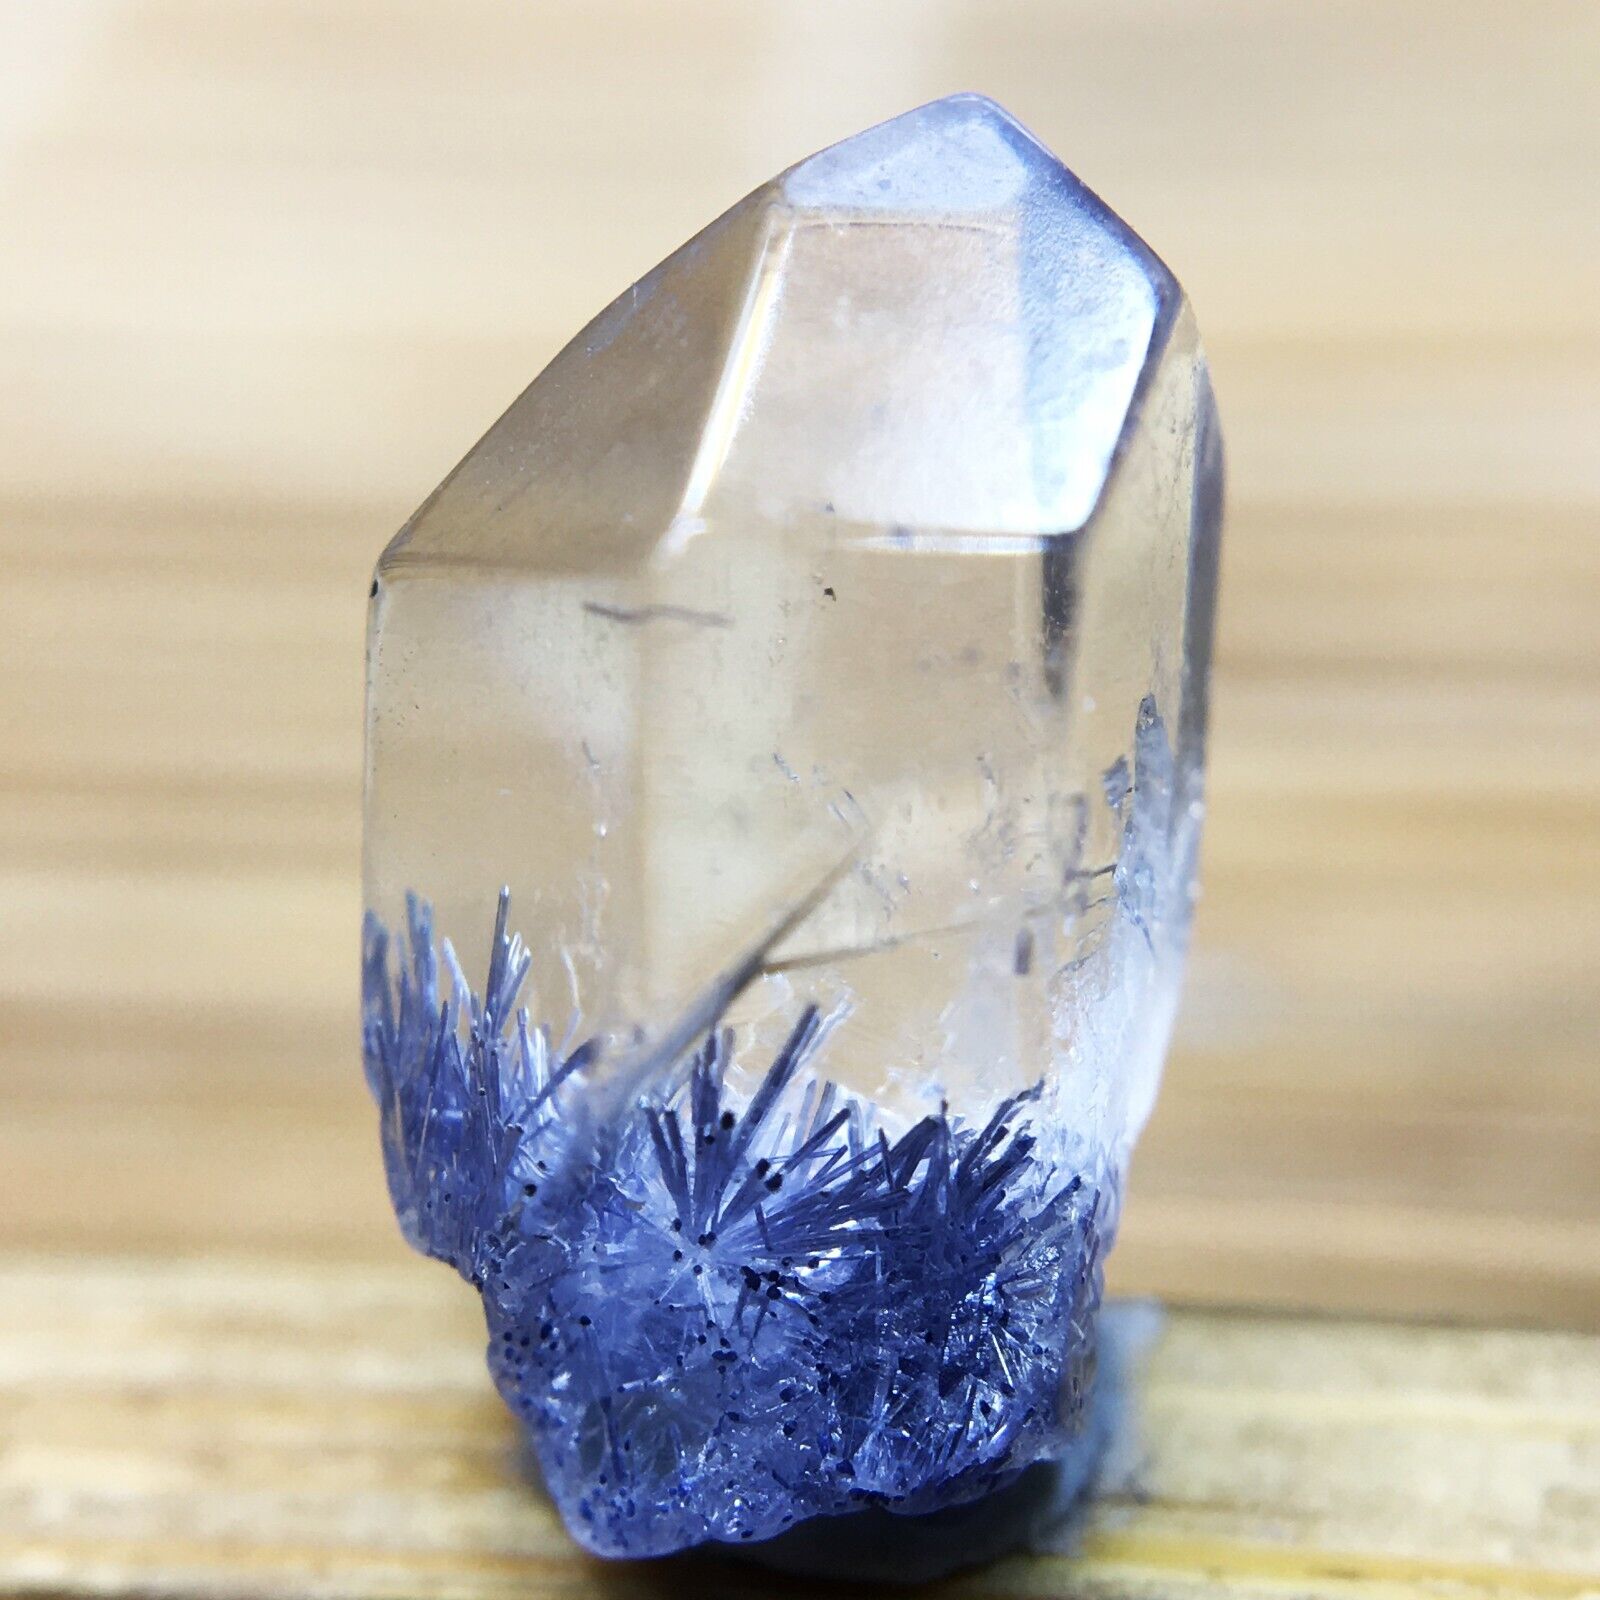 3Ct Very Rare NATURAL Beautiful Blue Dumortierite Quartz Crystal Specimen